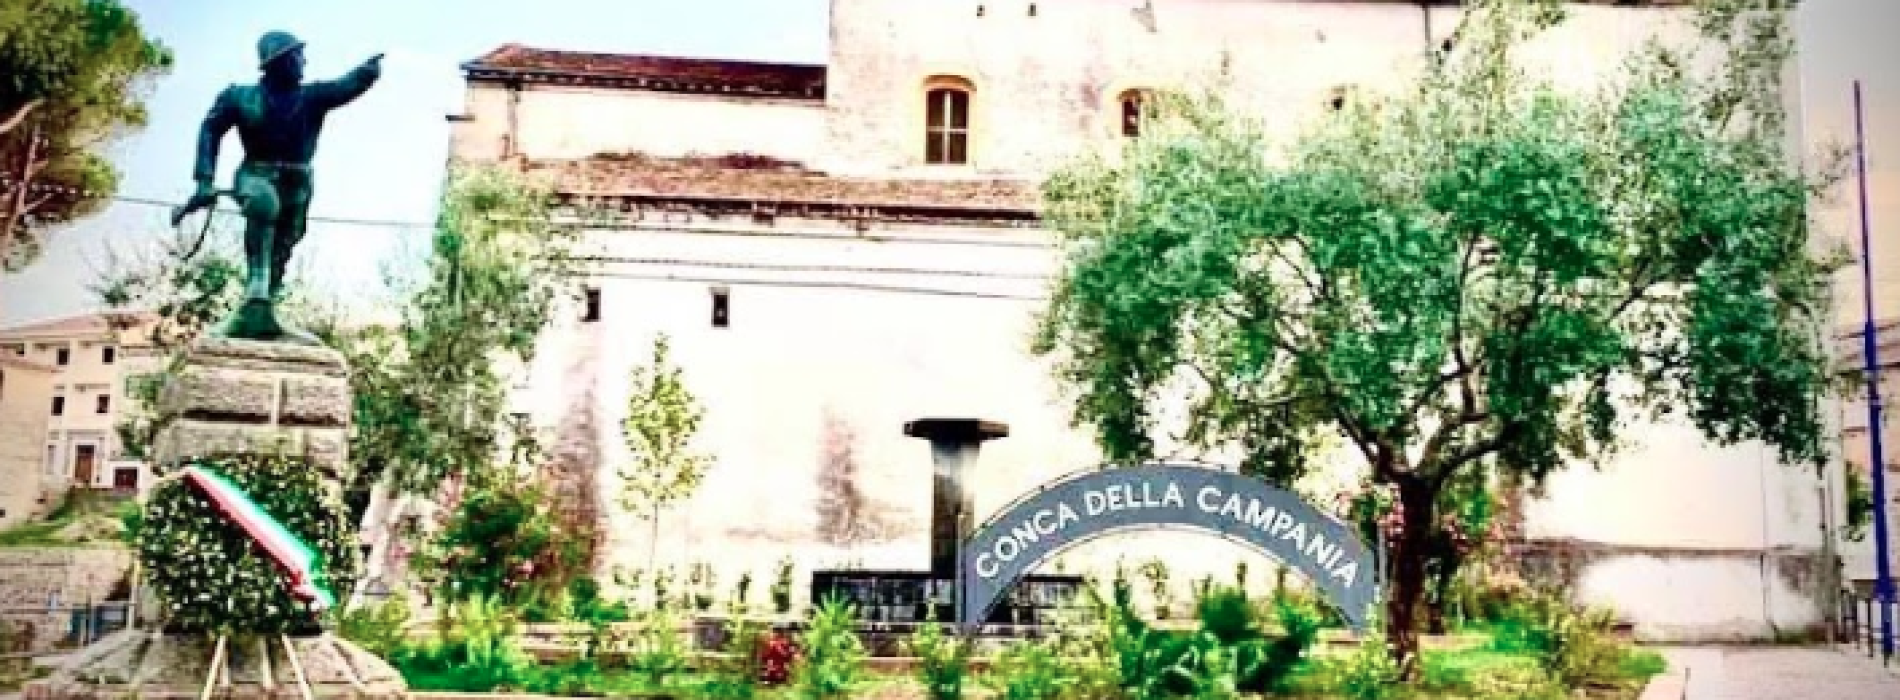 Sagra del Galluccio, “In vico veritas” a Conca della Campania